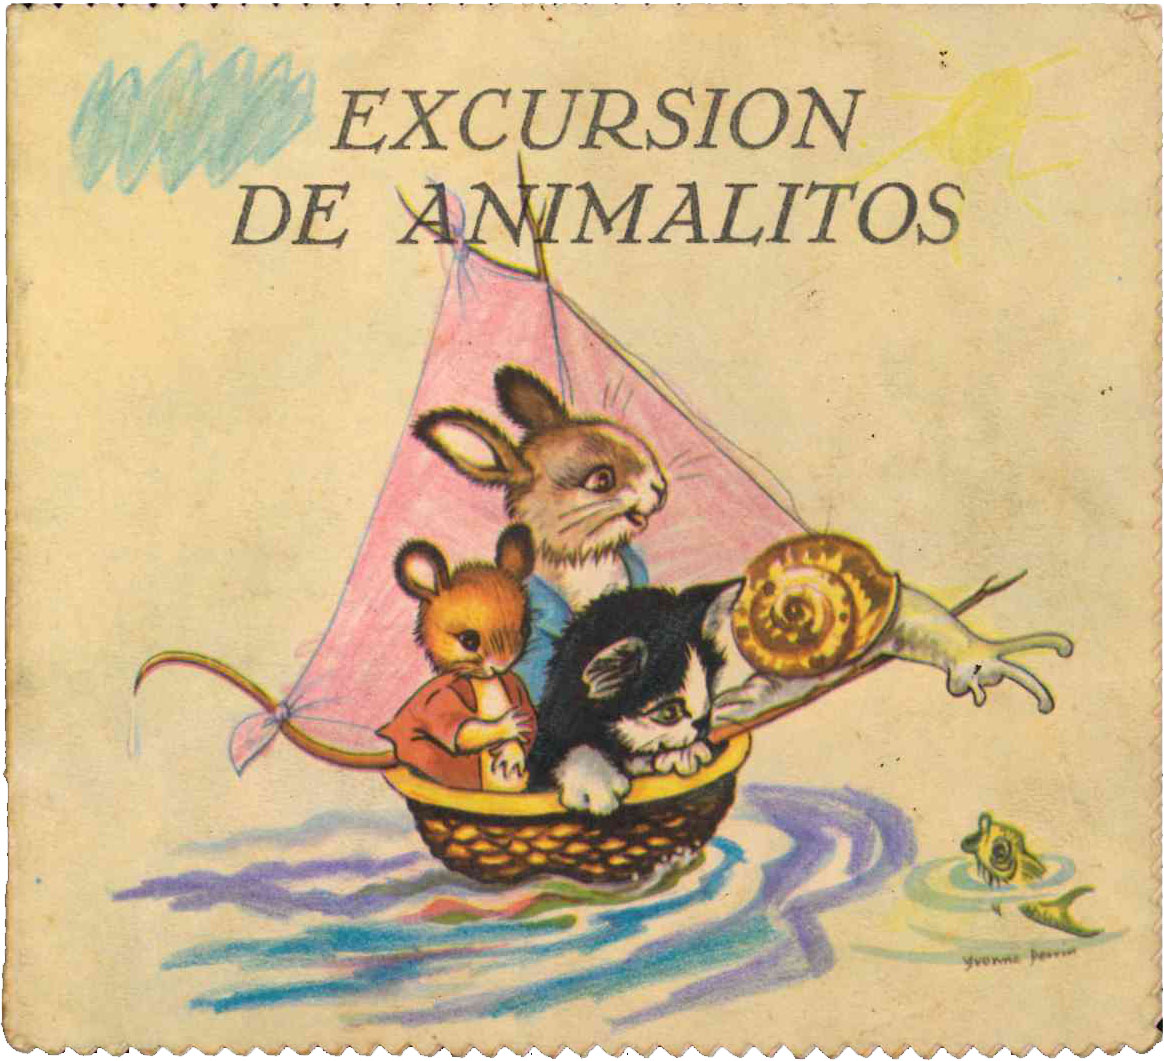 Cuento Excursión de Animalitos. Colección Celeste nº 4. Editorial Roma